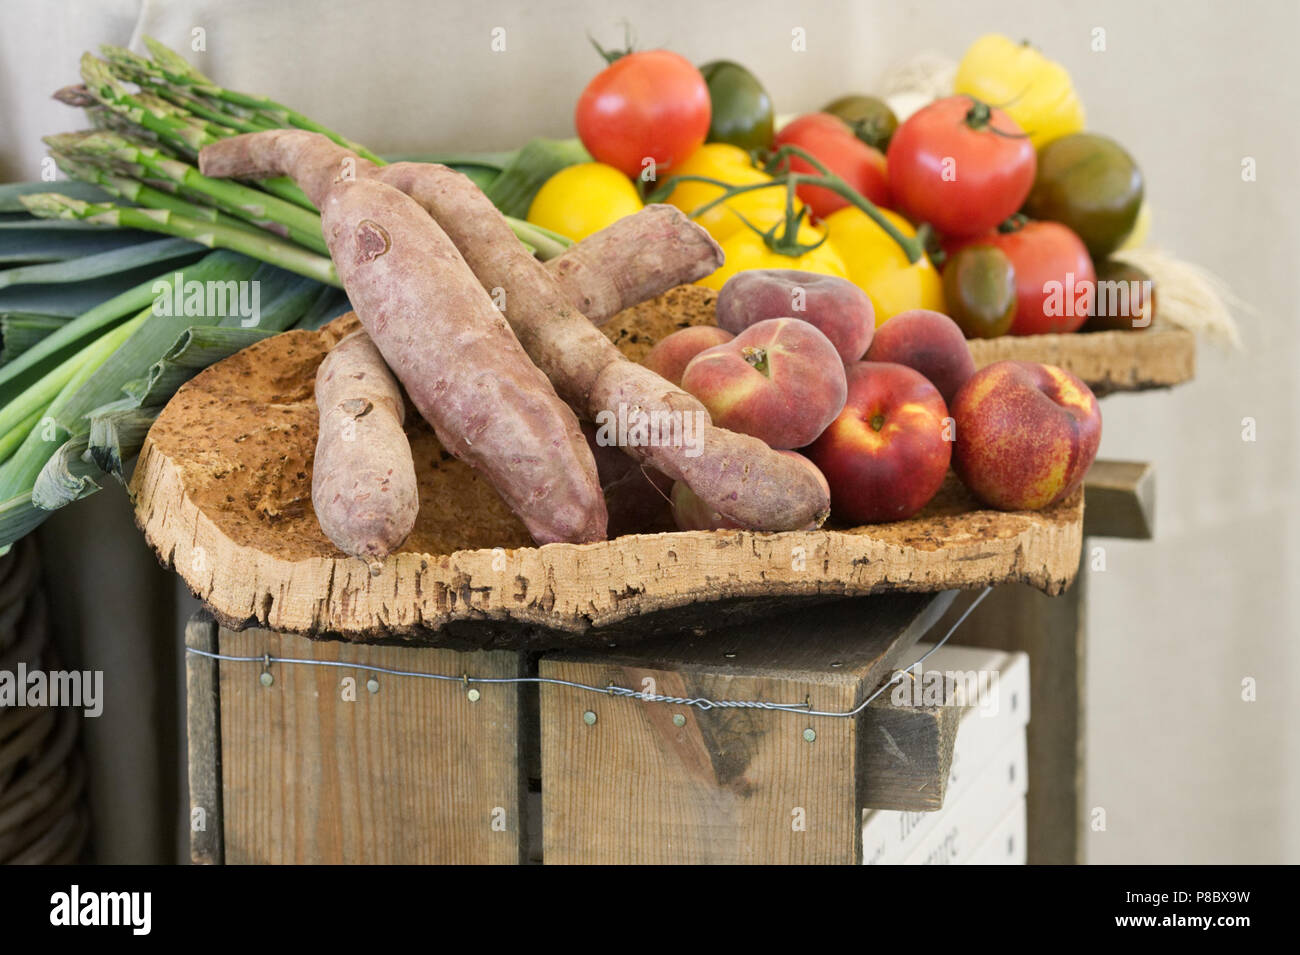 Frisches Obst und Gemüse an eine kochvorführung. Stockfoto